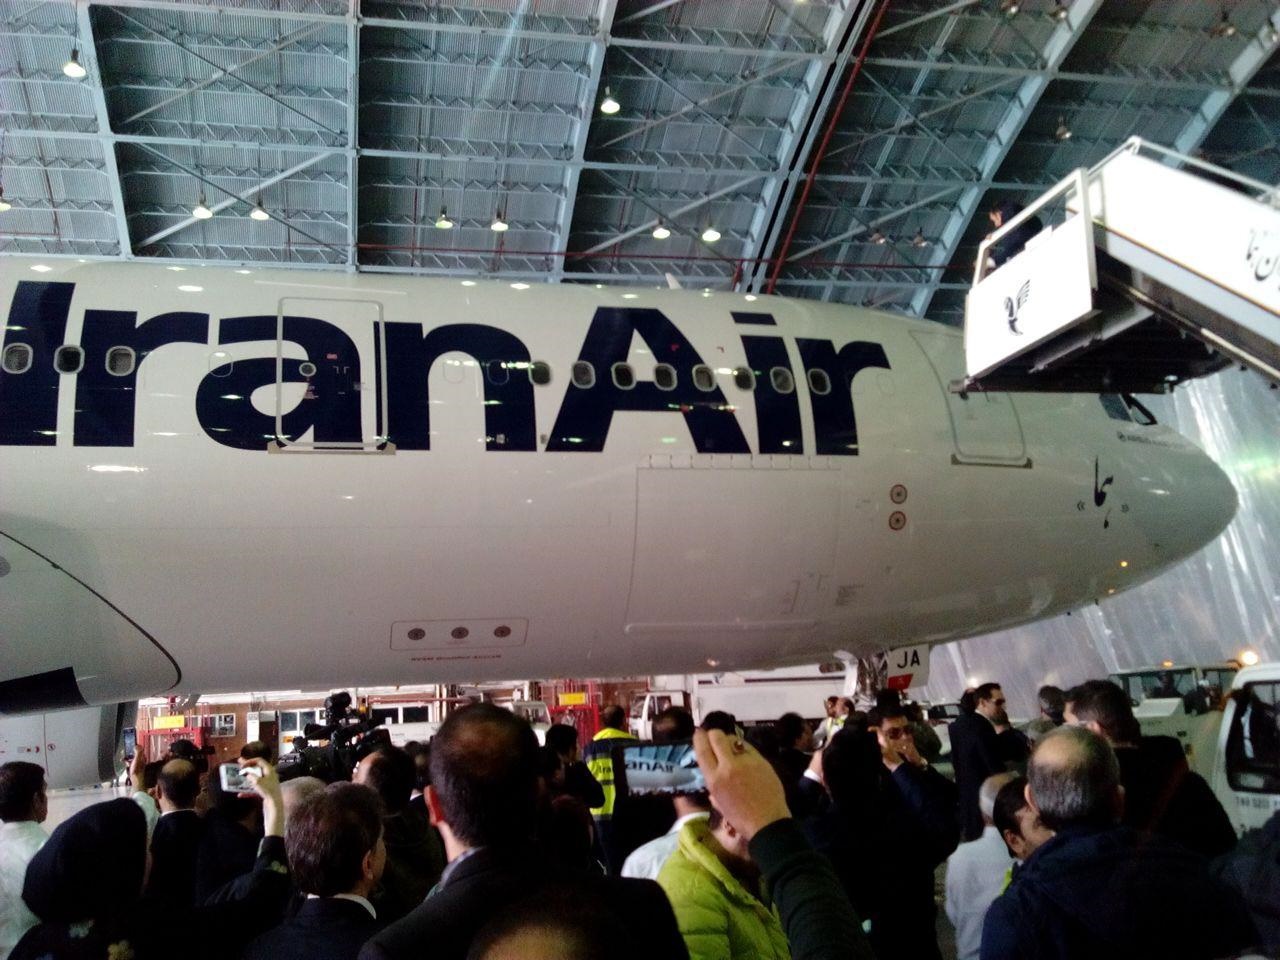 لحظه ورود هواپیمای جدید ایران را به آشیانه ببینید